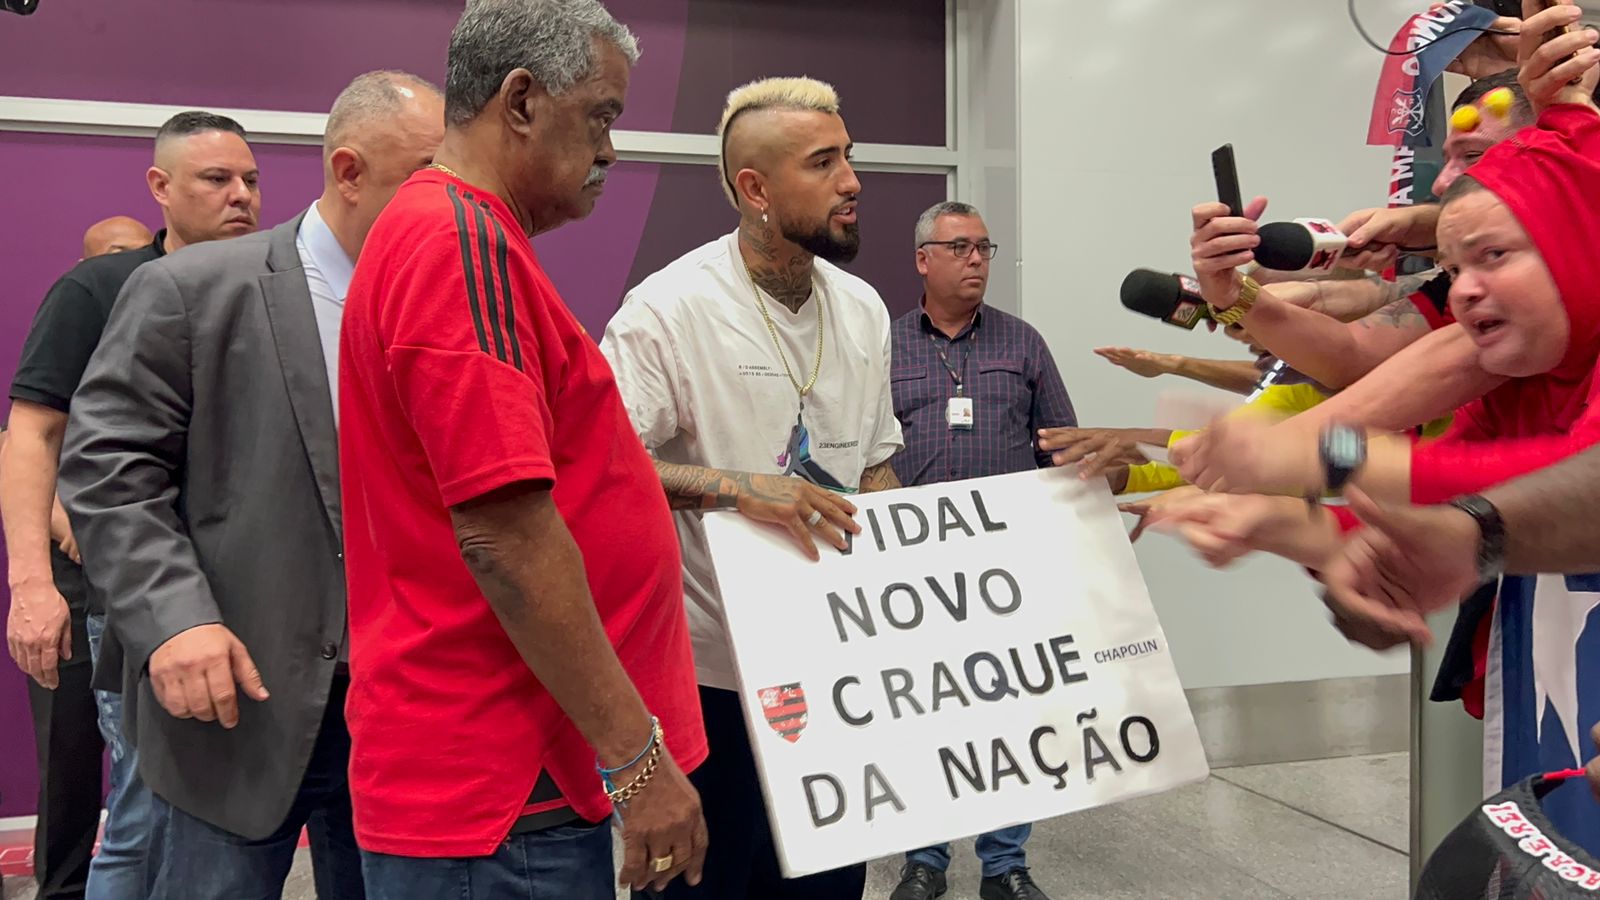 Arturo Vidal desembarca no Rio de Janeiro para assinar contrato com o Flamengo